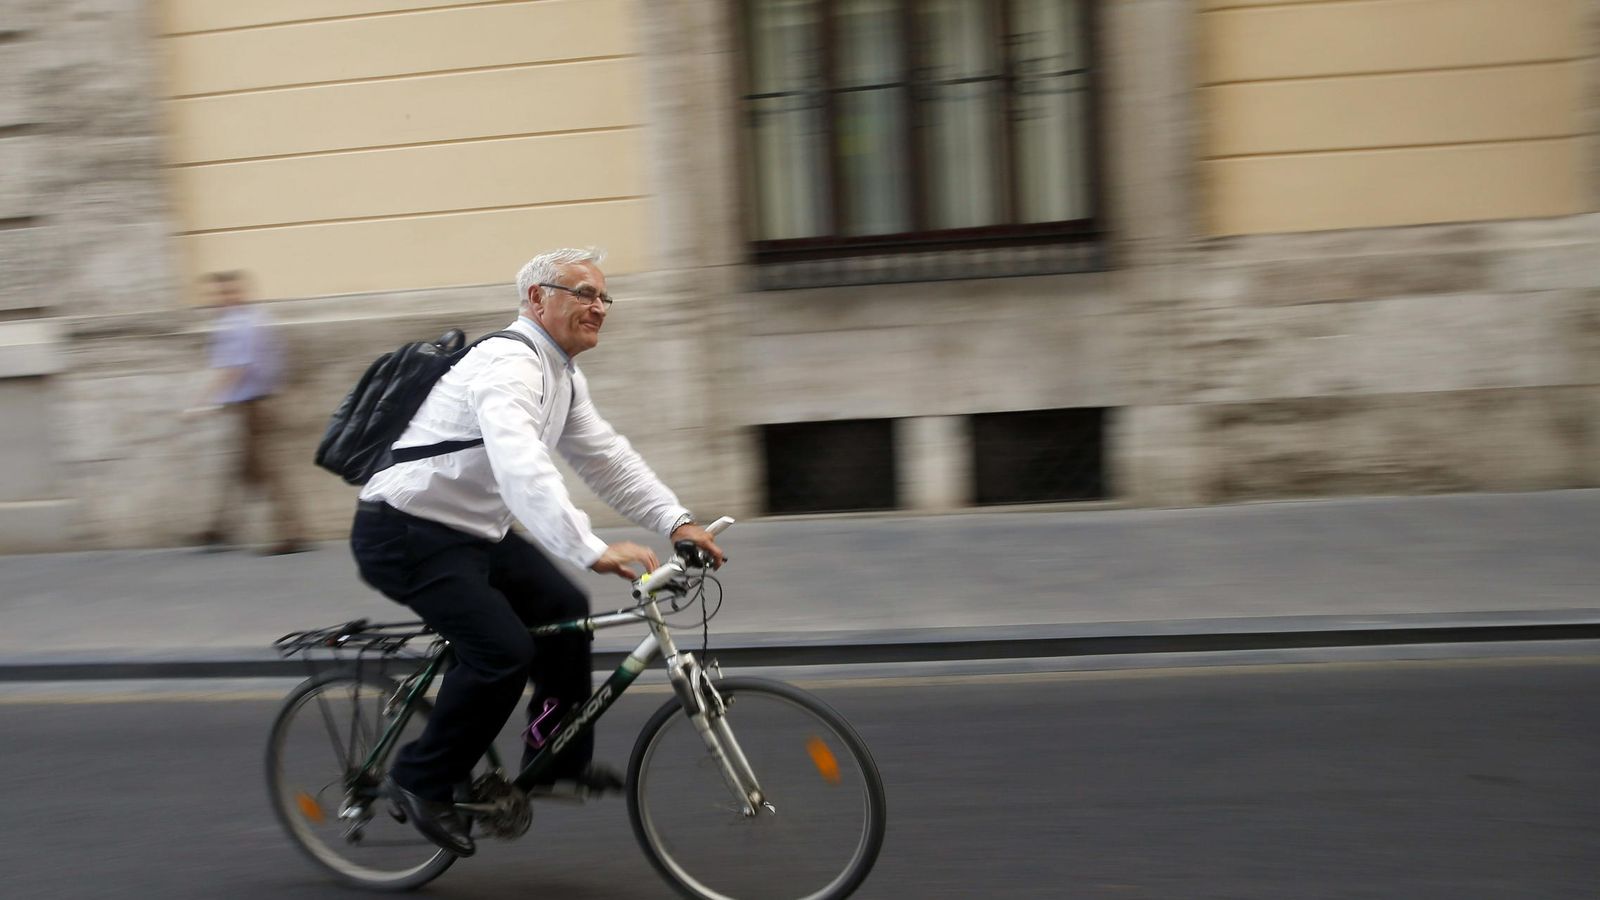 Foto: El alcalde de Valencia, Joan Ribó (Compromís), sale con su bicicleta del ayuntamiento. (EFE)